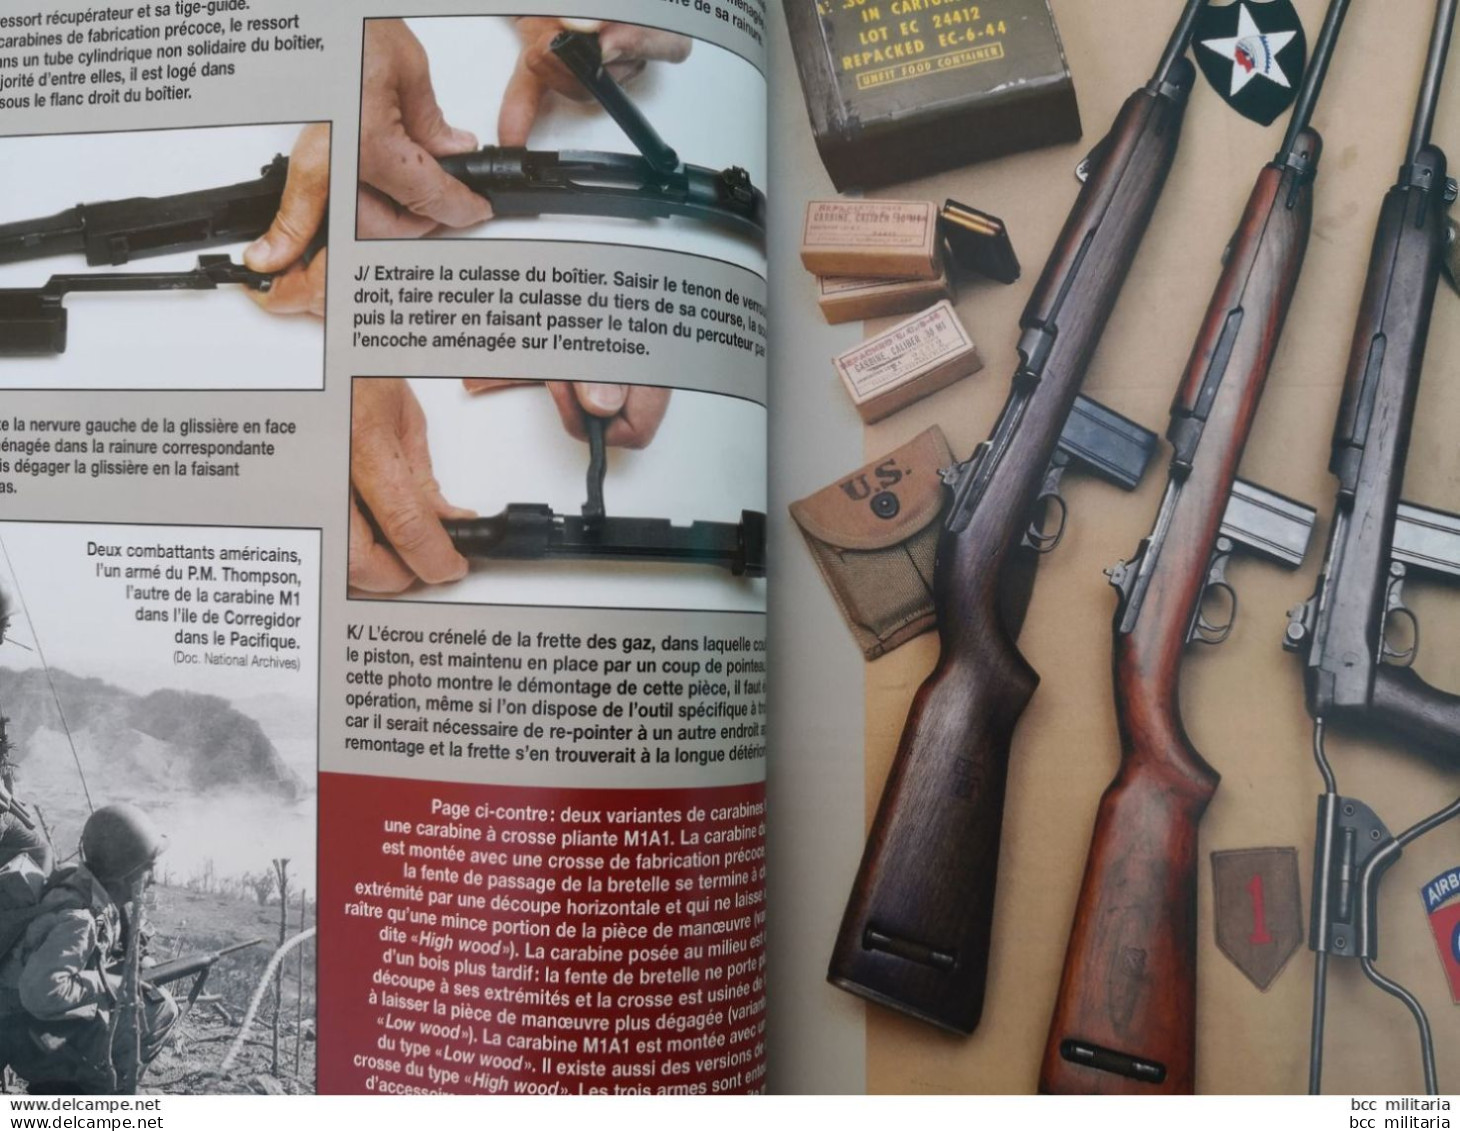 L'US M1 La carabine de la libération - Gazette des armes n° 14 Hors série ( revue neuve de stock )